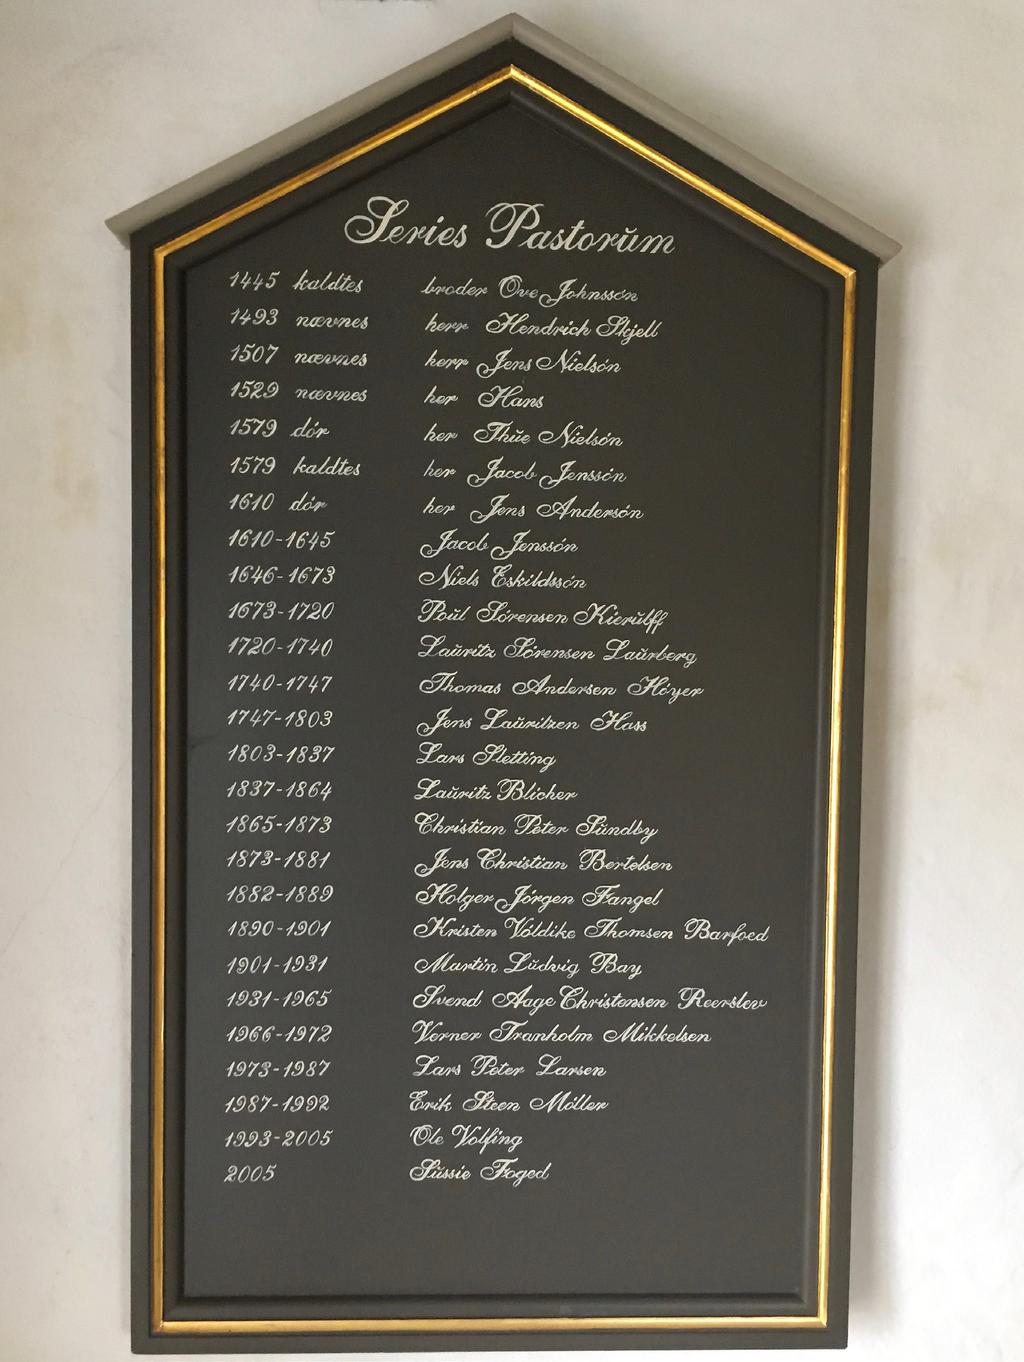 I våbenhuset er også præstetavlen, Series Pastorum, med de 26 præstenavne